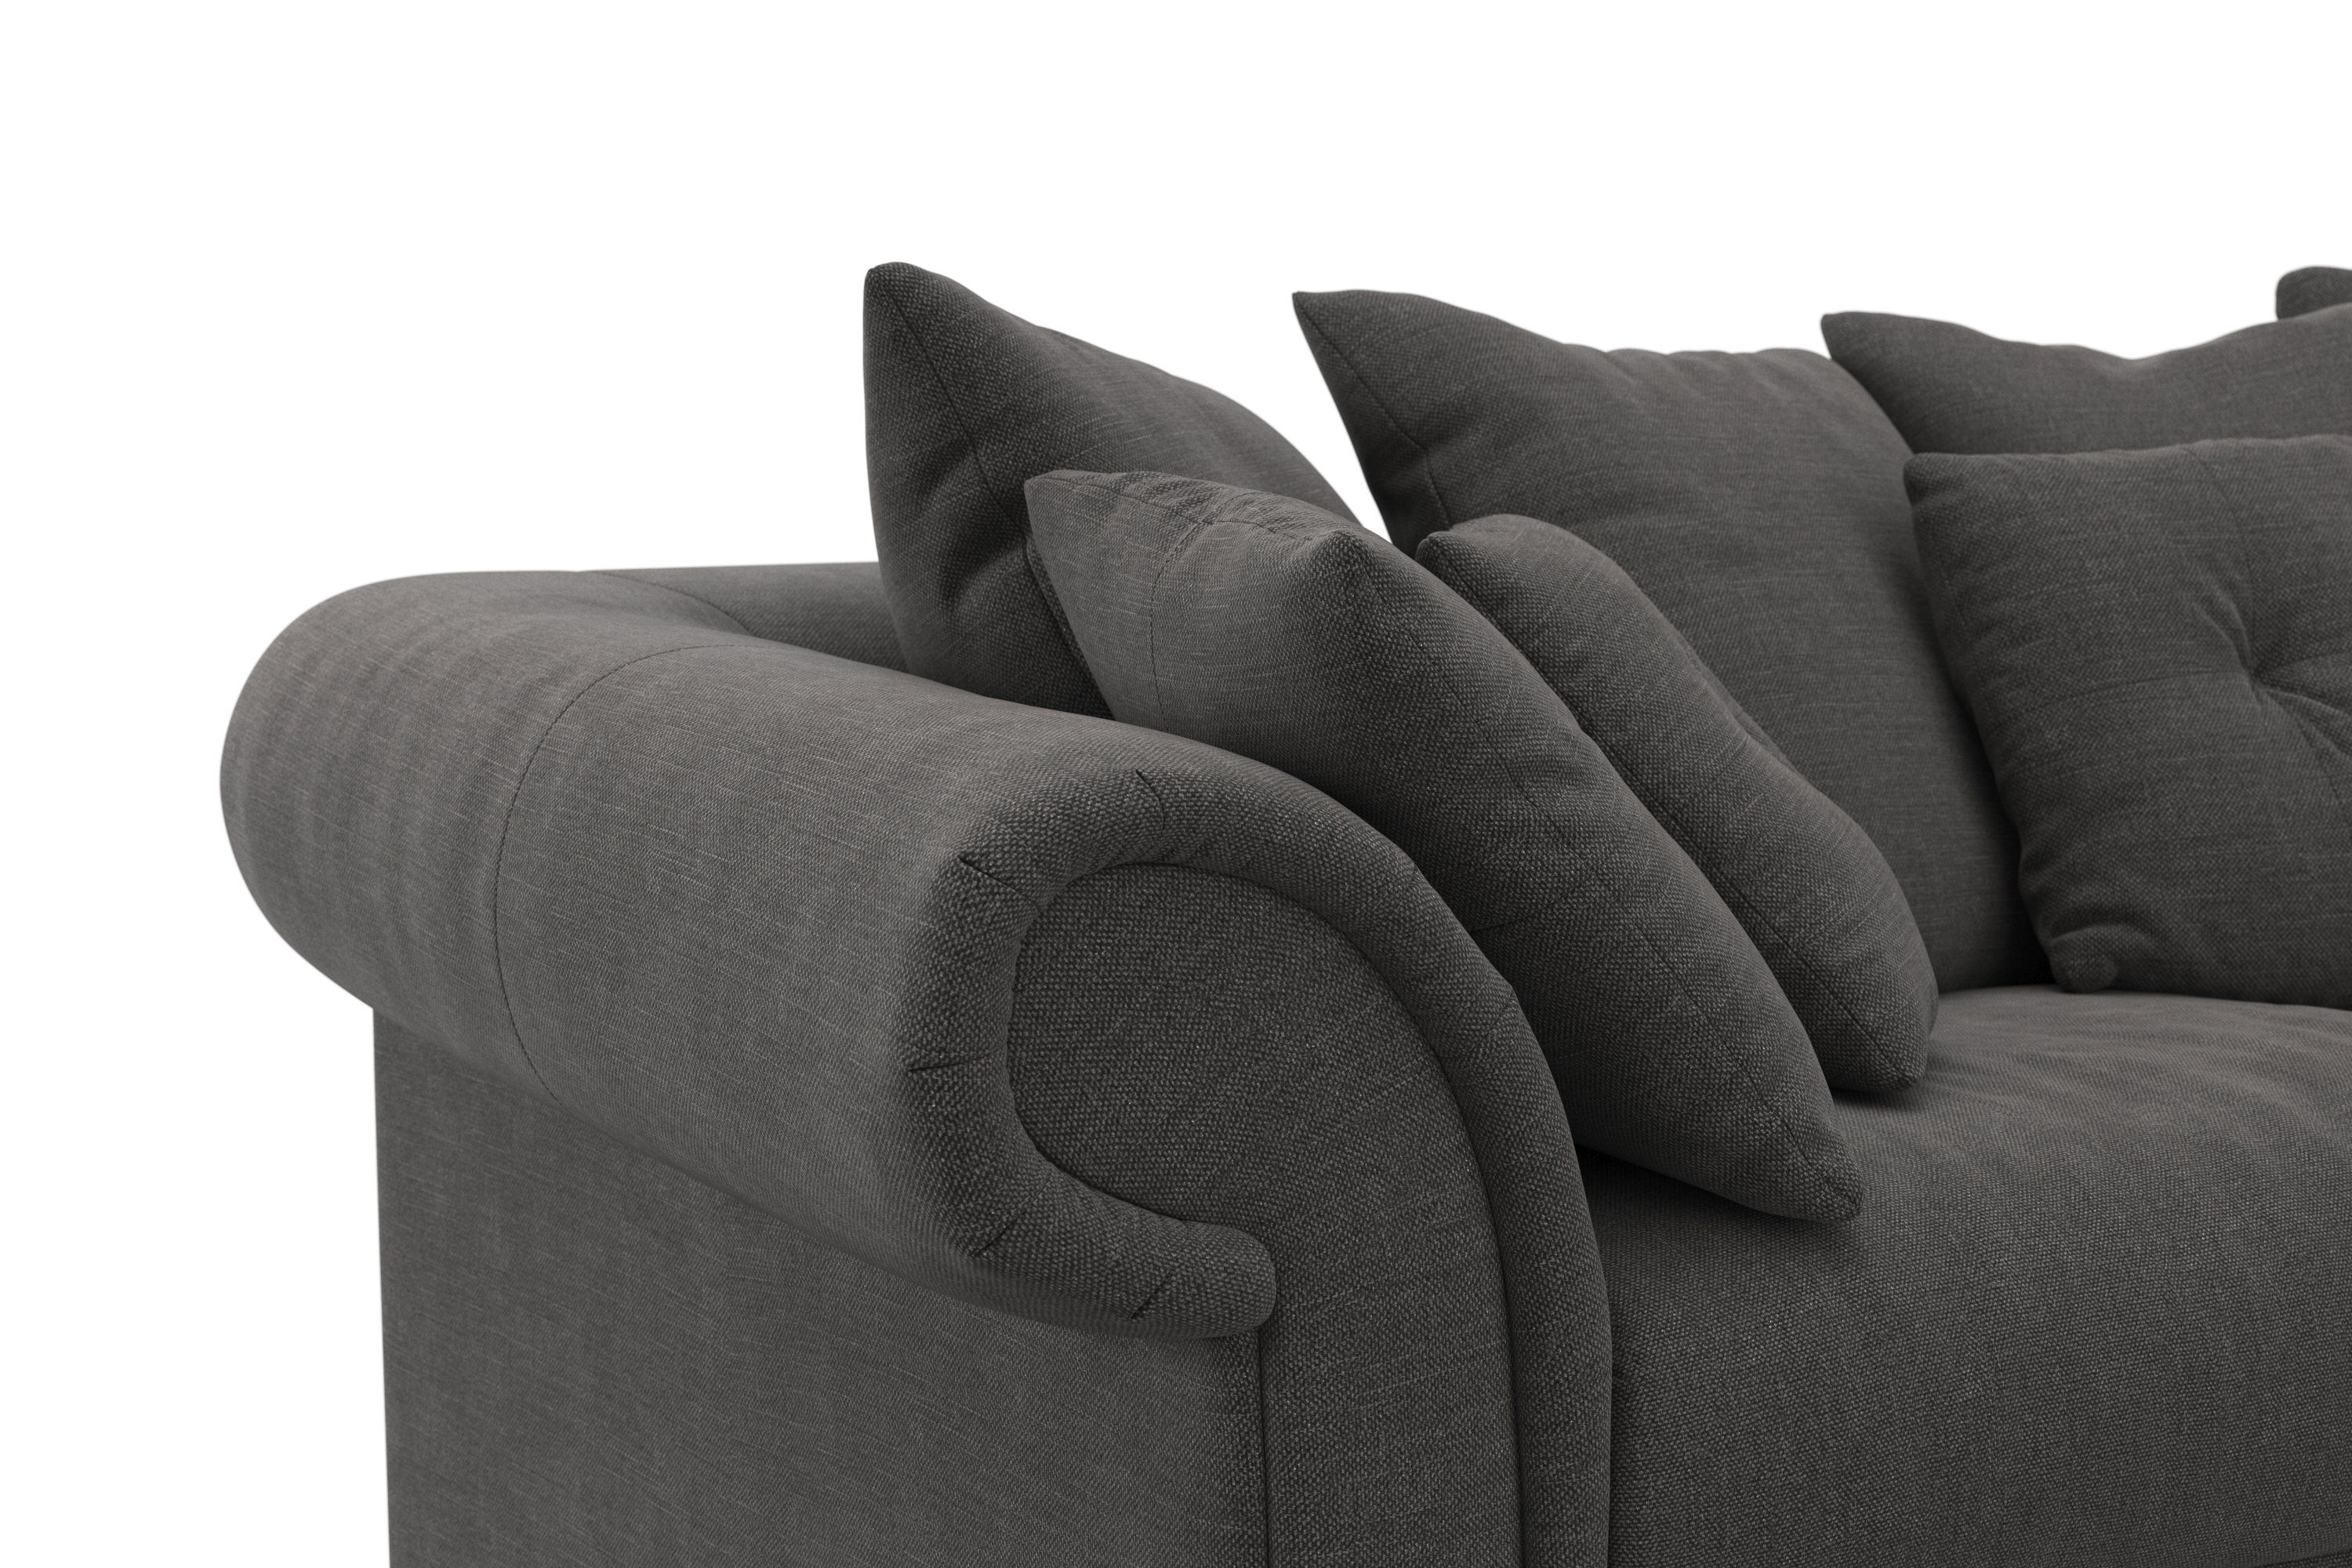 Home affaire Big-Sofa Queenie Megasofa, viele kuschelige zeitlosem mit Kissen Design, weichem Sitzkomfort und 2 Teile